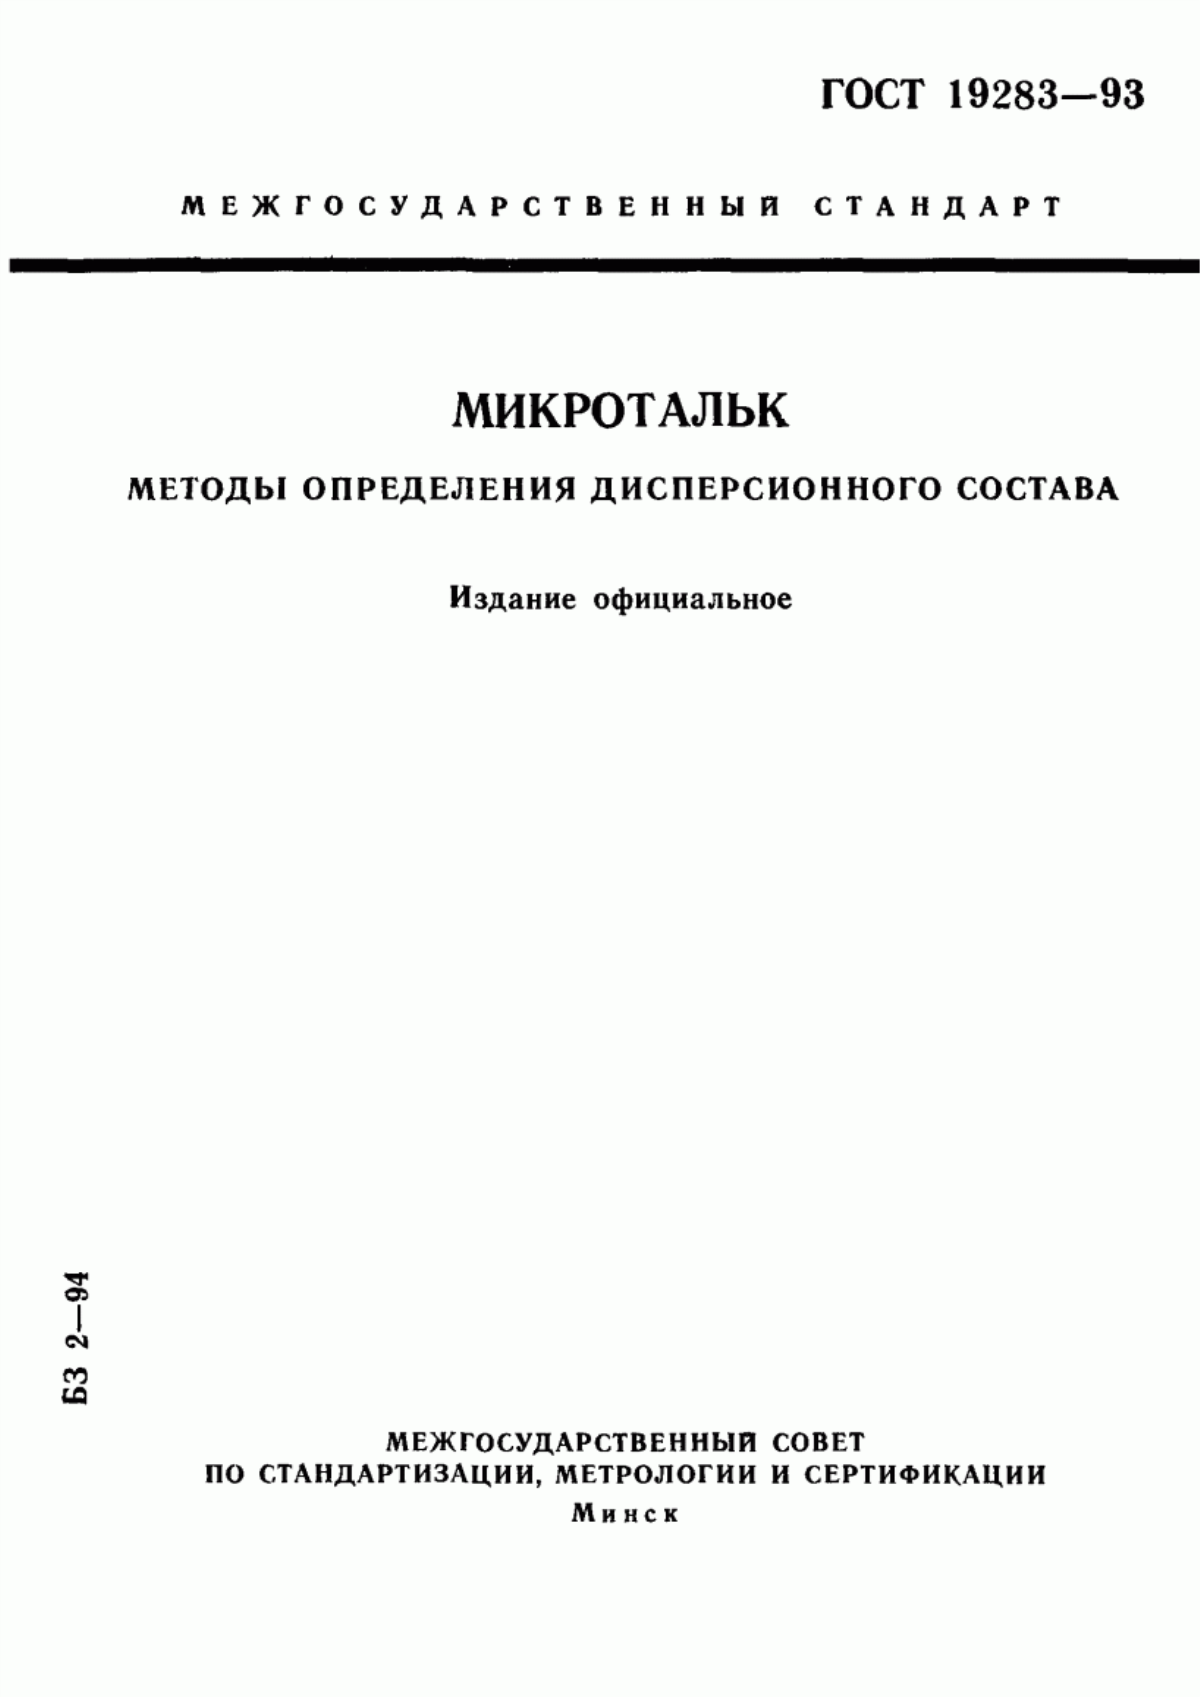 ГОСТ 19283-93 Микротальк. Методы определения дисперсионного состава